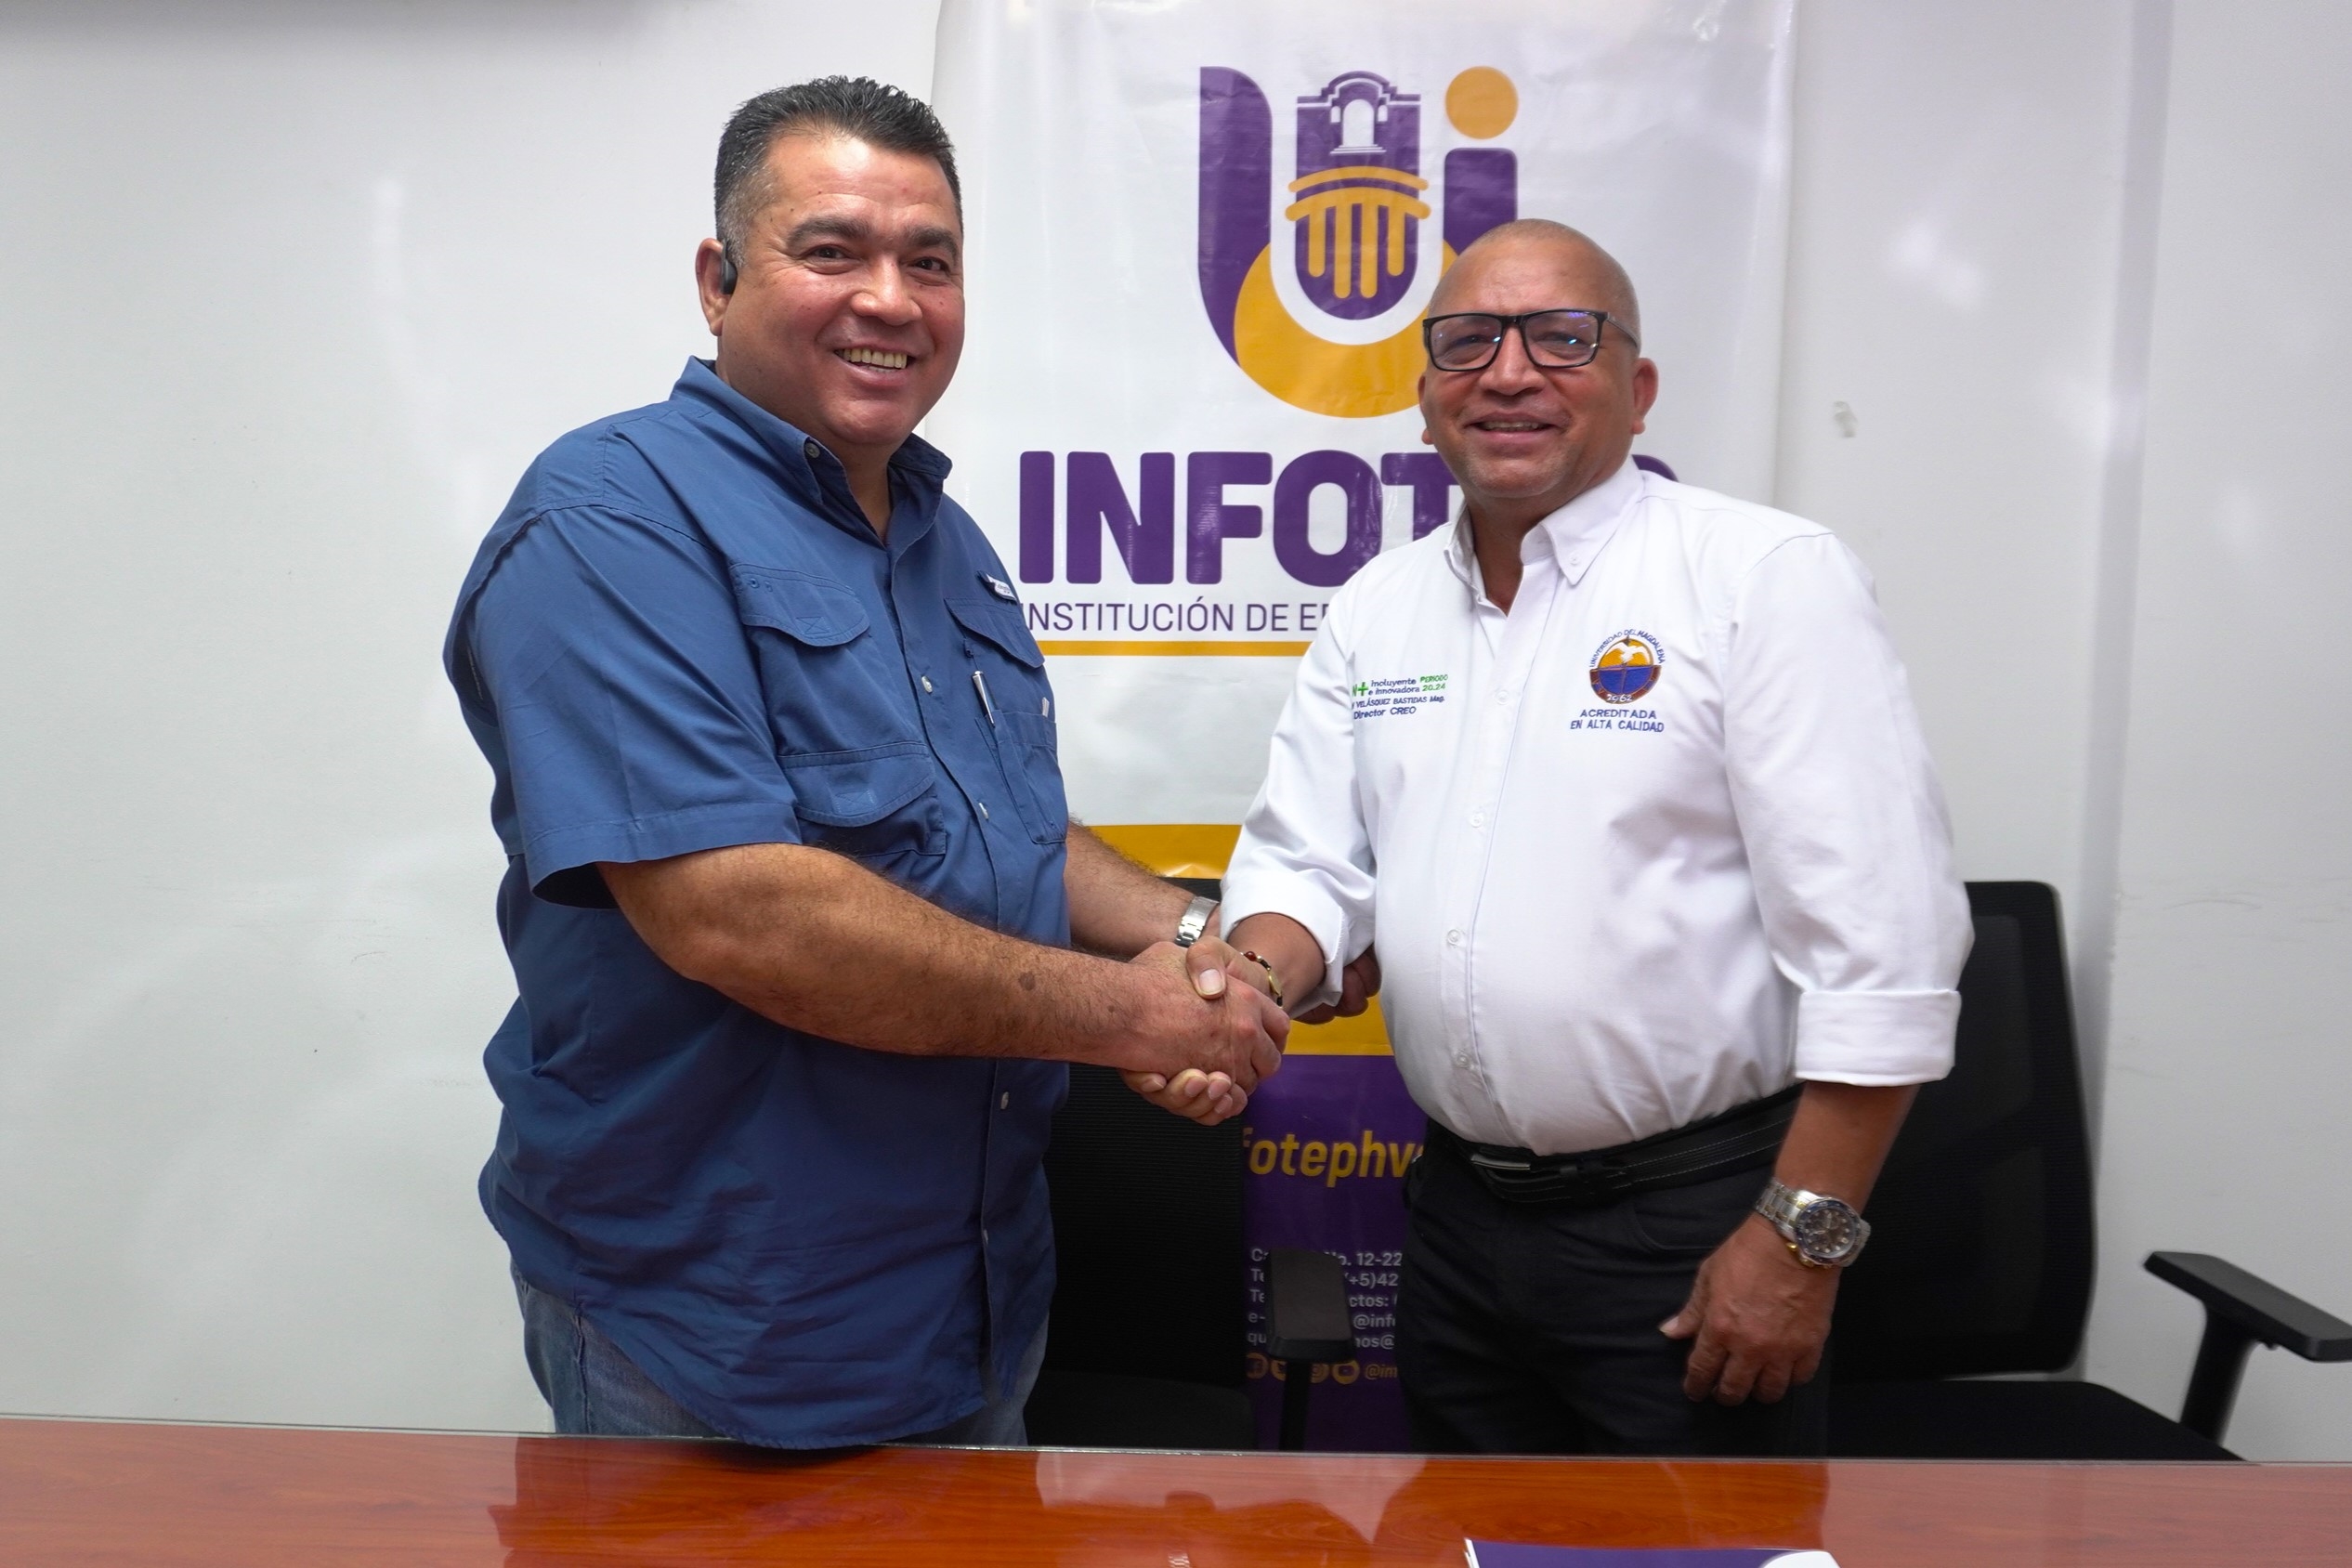 Infotep y Unimag renuevan alianza por la educación superior de los jóvenes del Departamento